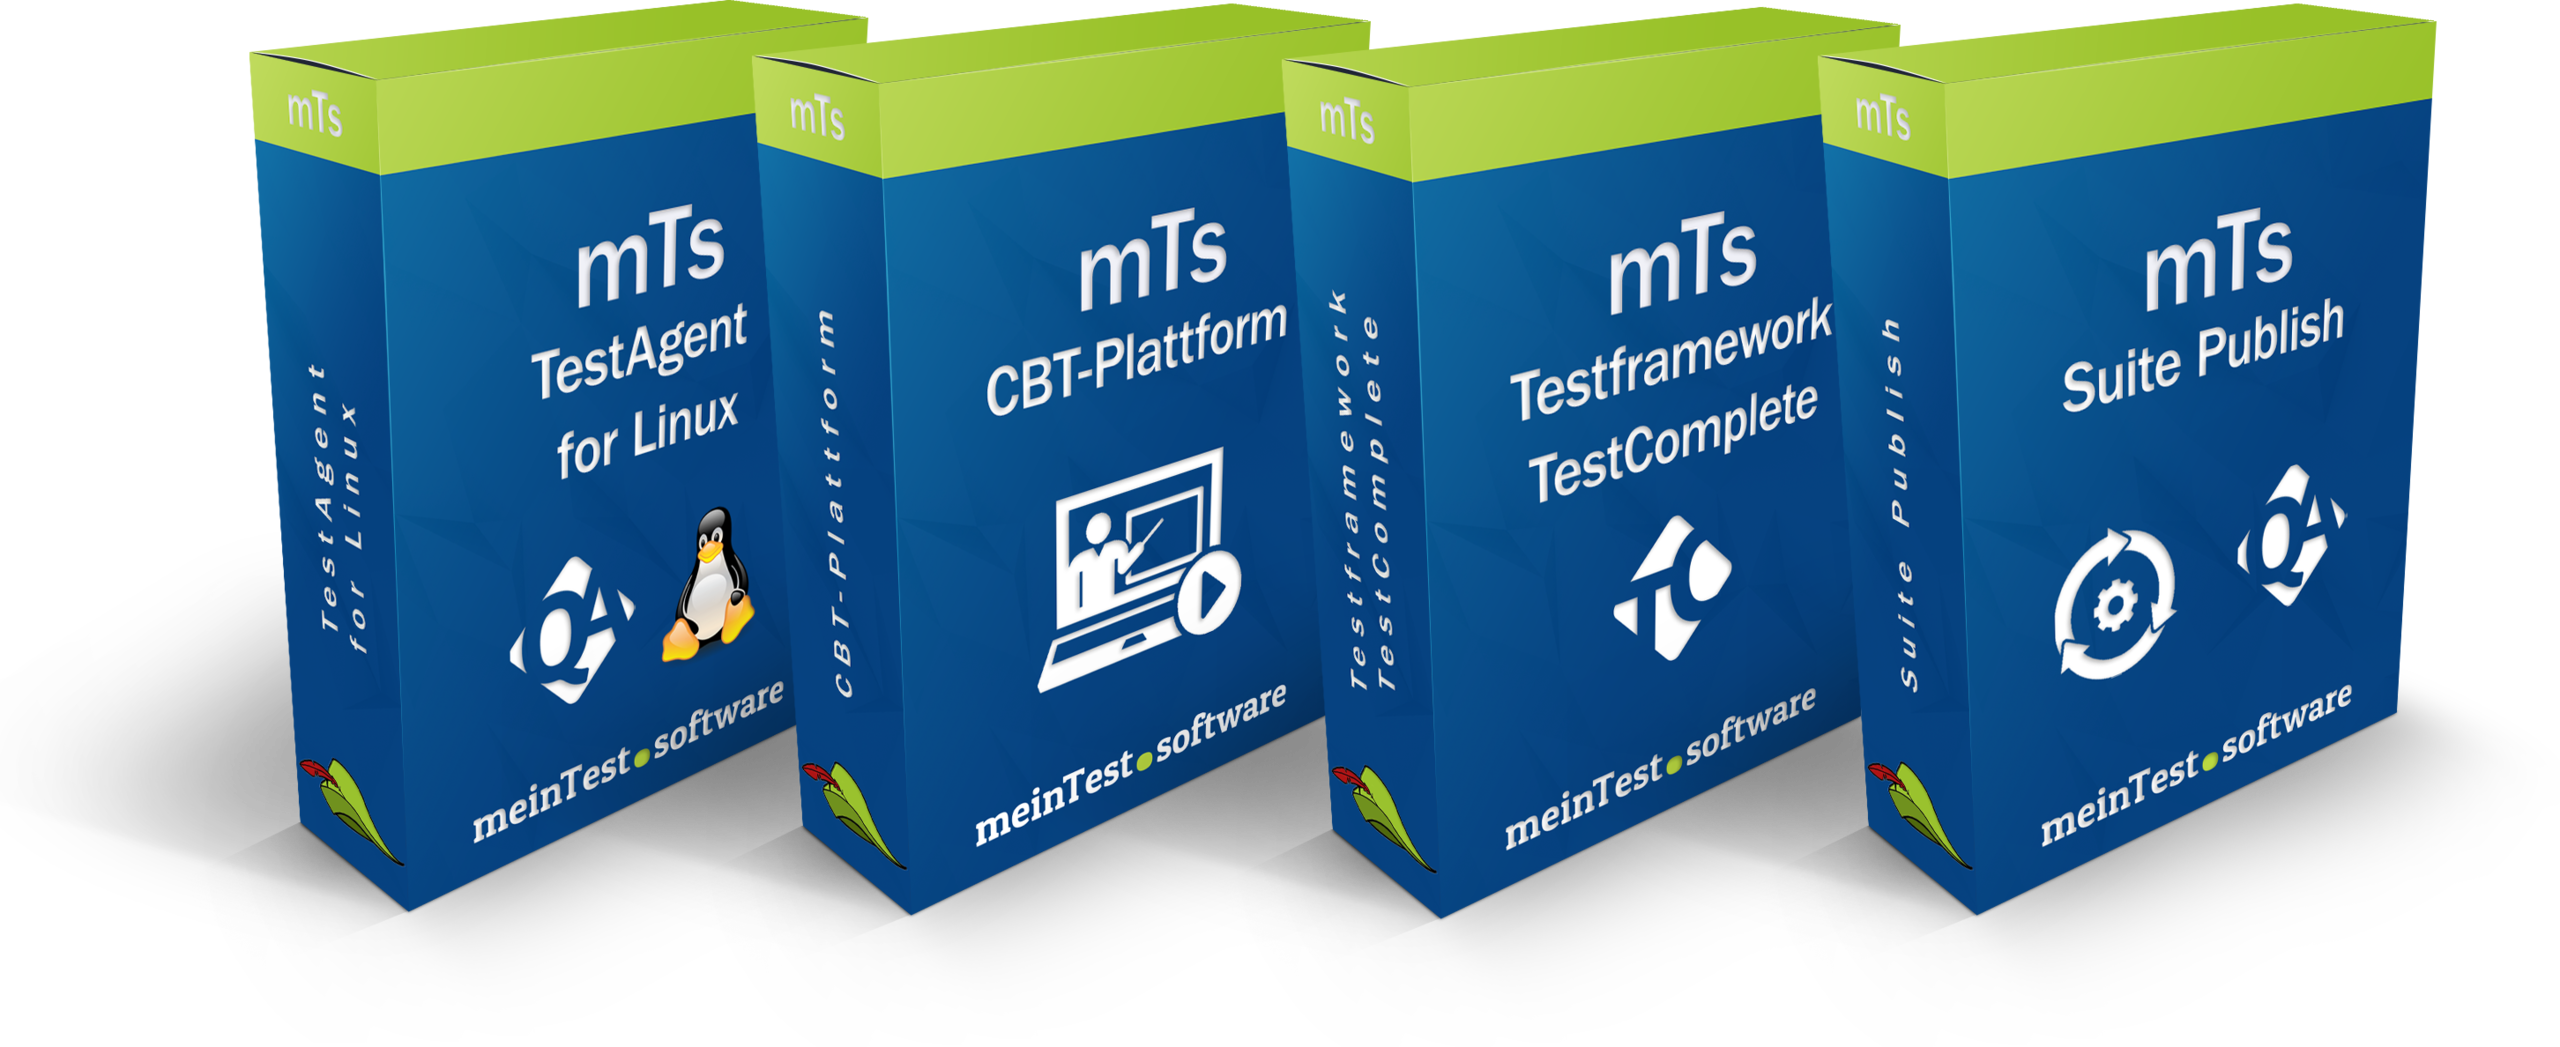 Die Produkte TestAgent 4 Linux, CBT-Plattform, Testframework für SoapUI, Testframework für TestComplete und Suite Publish mit ihrer zugehörigen Produktebox